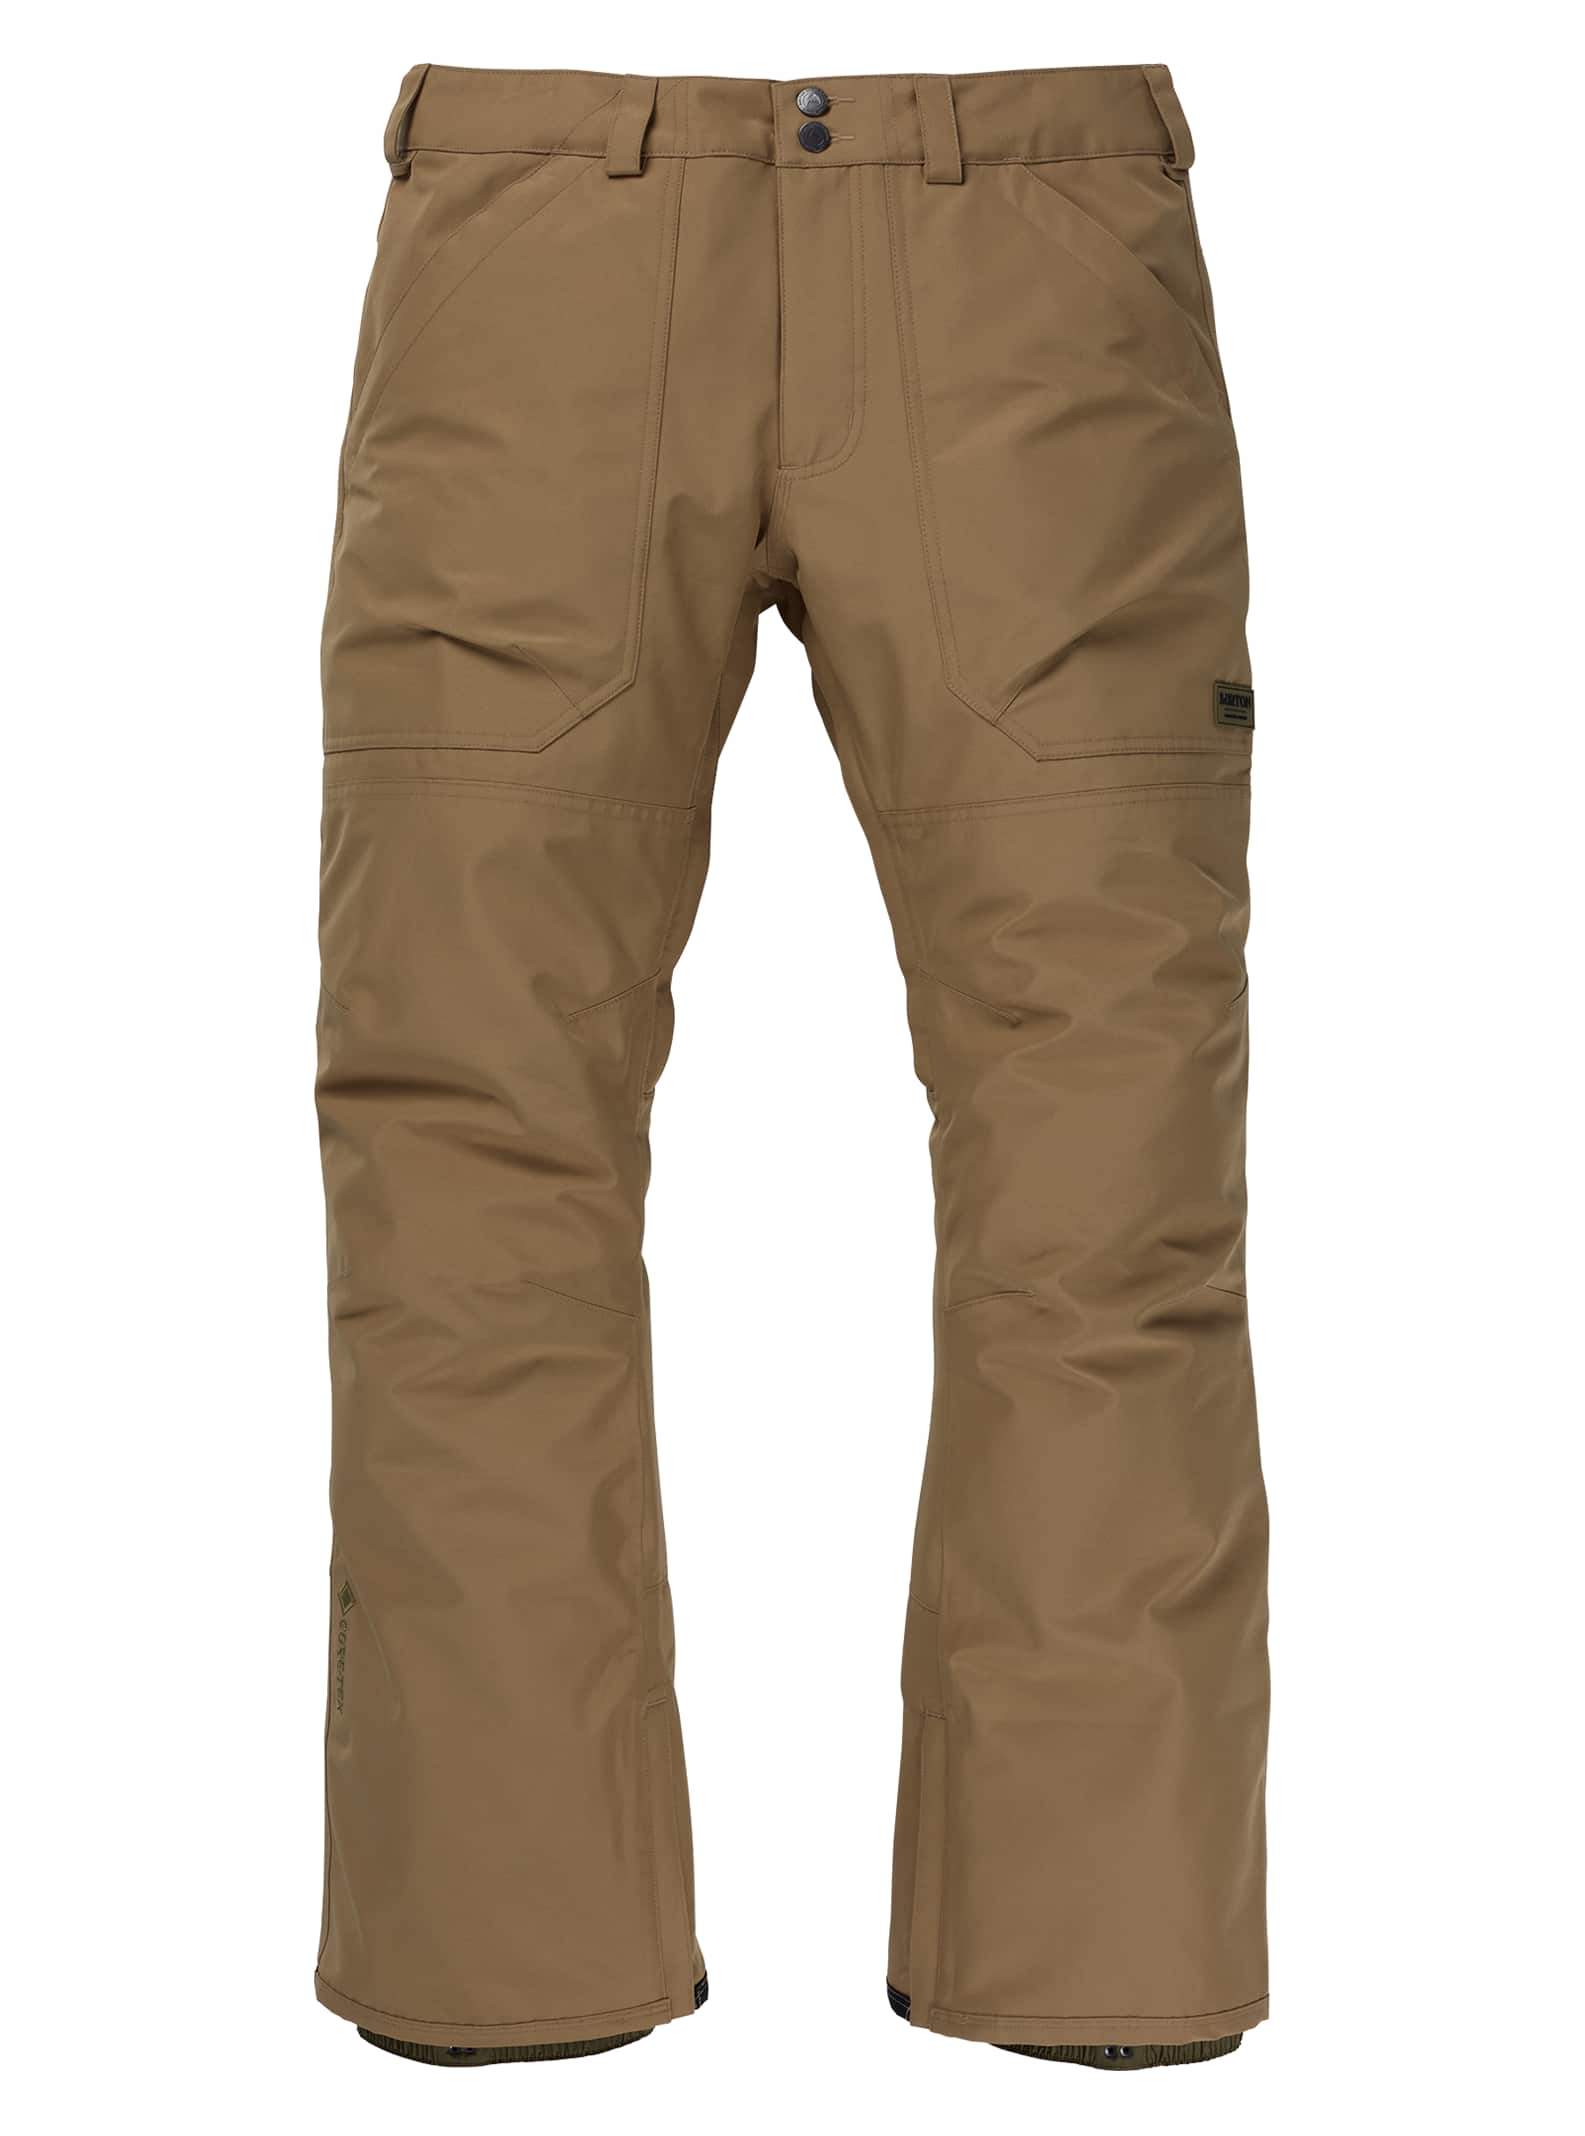 Burton - Pantalon Ballast GORE-TEX 2 L homme (Long), Kelp, L